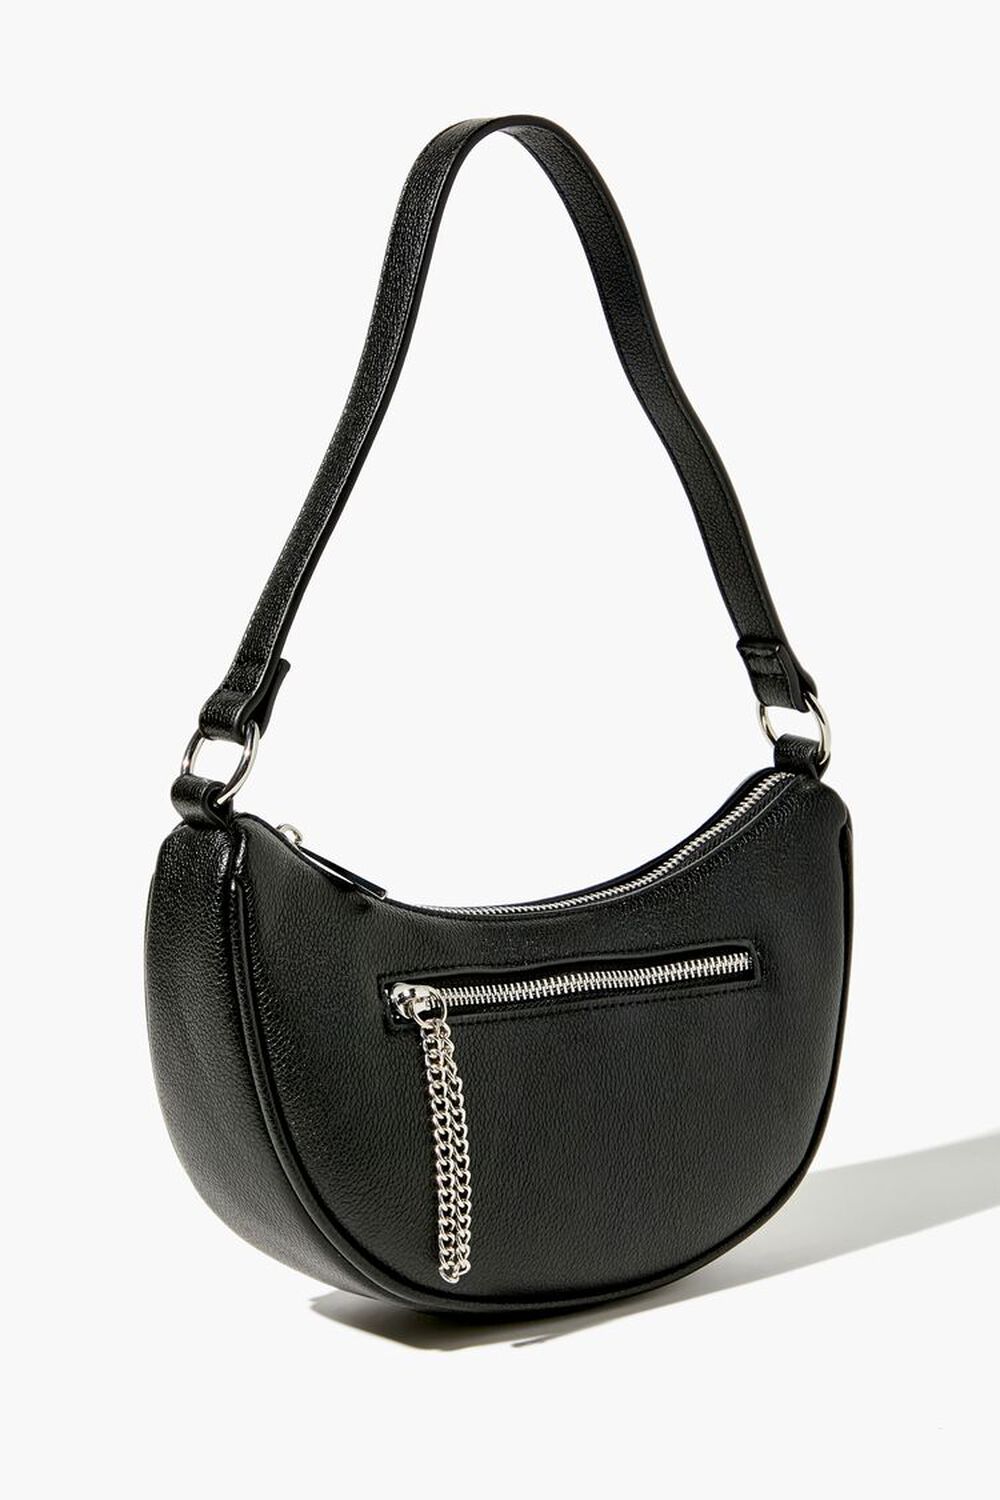 BLACK Faux Leather Baguette Shoulder Bag, image 2